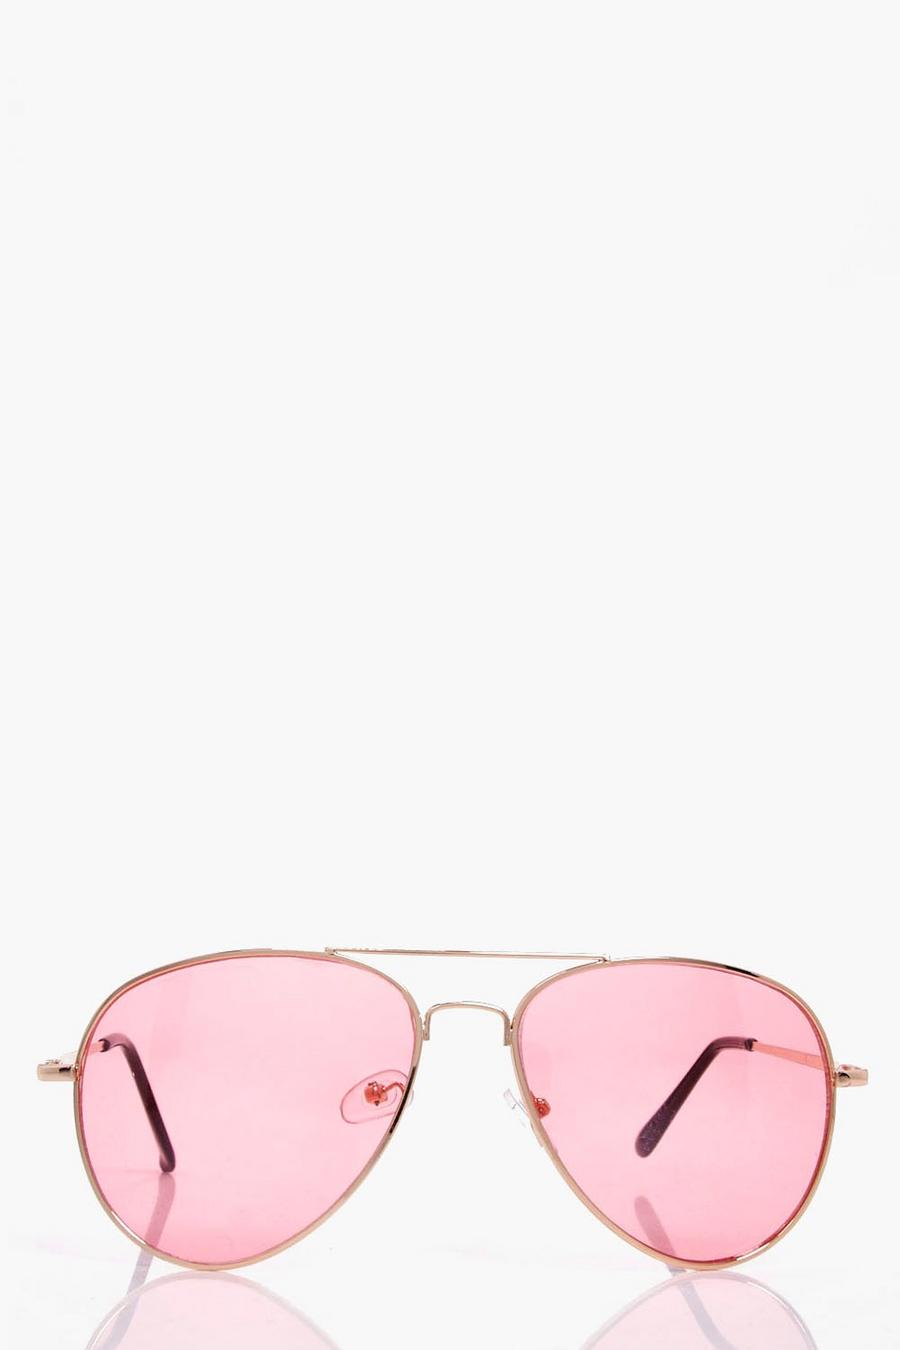 Occhiali da sole stile Aviatore con lenti rosa pallido, Pink rosa image number 1